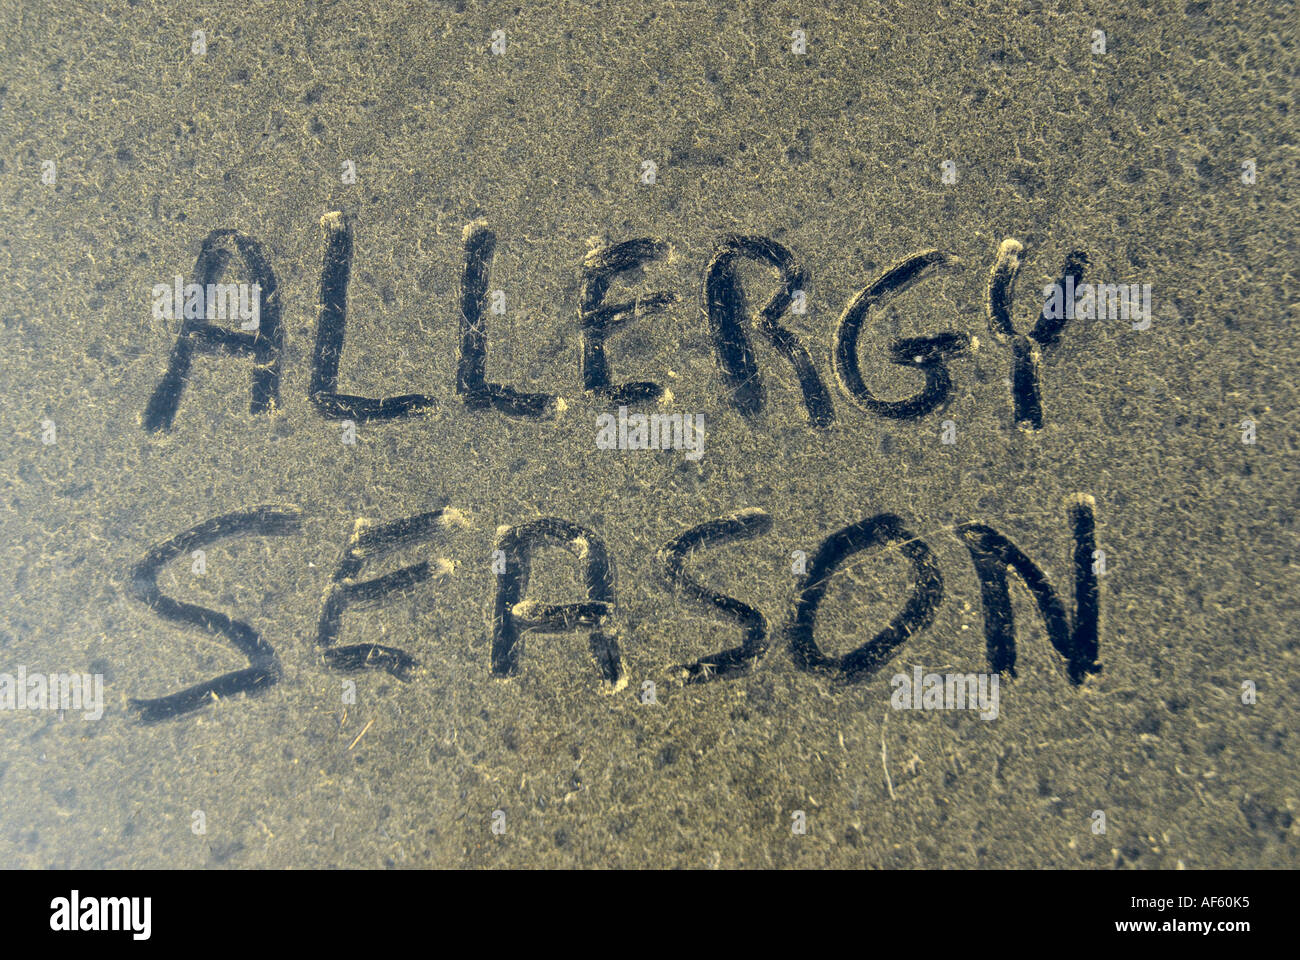 Temporada de alergia palabras dibujadas en el polen acumulado en el capó del coche Foto de stock